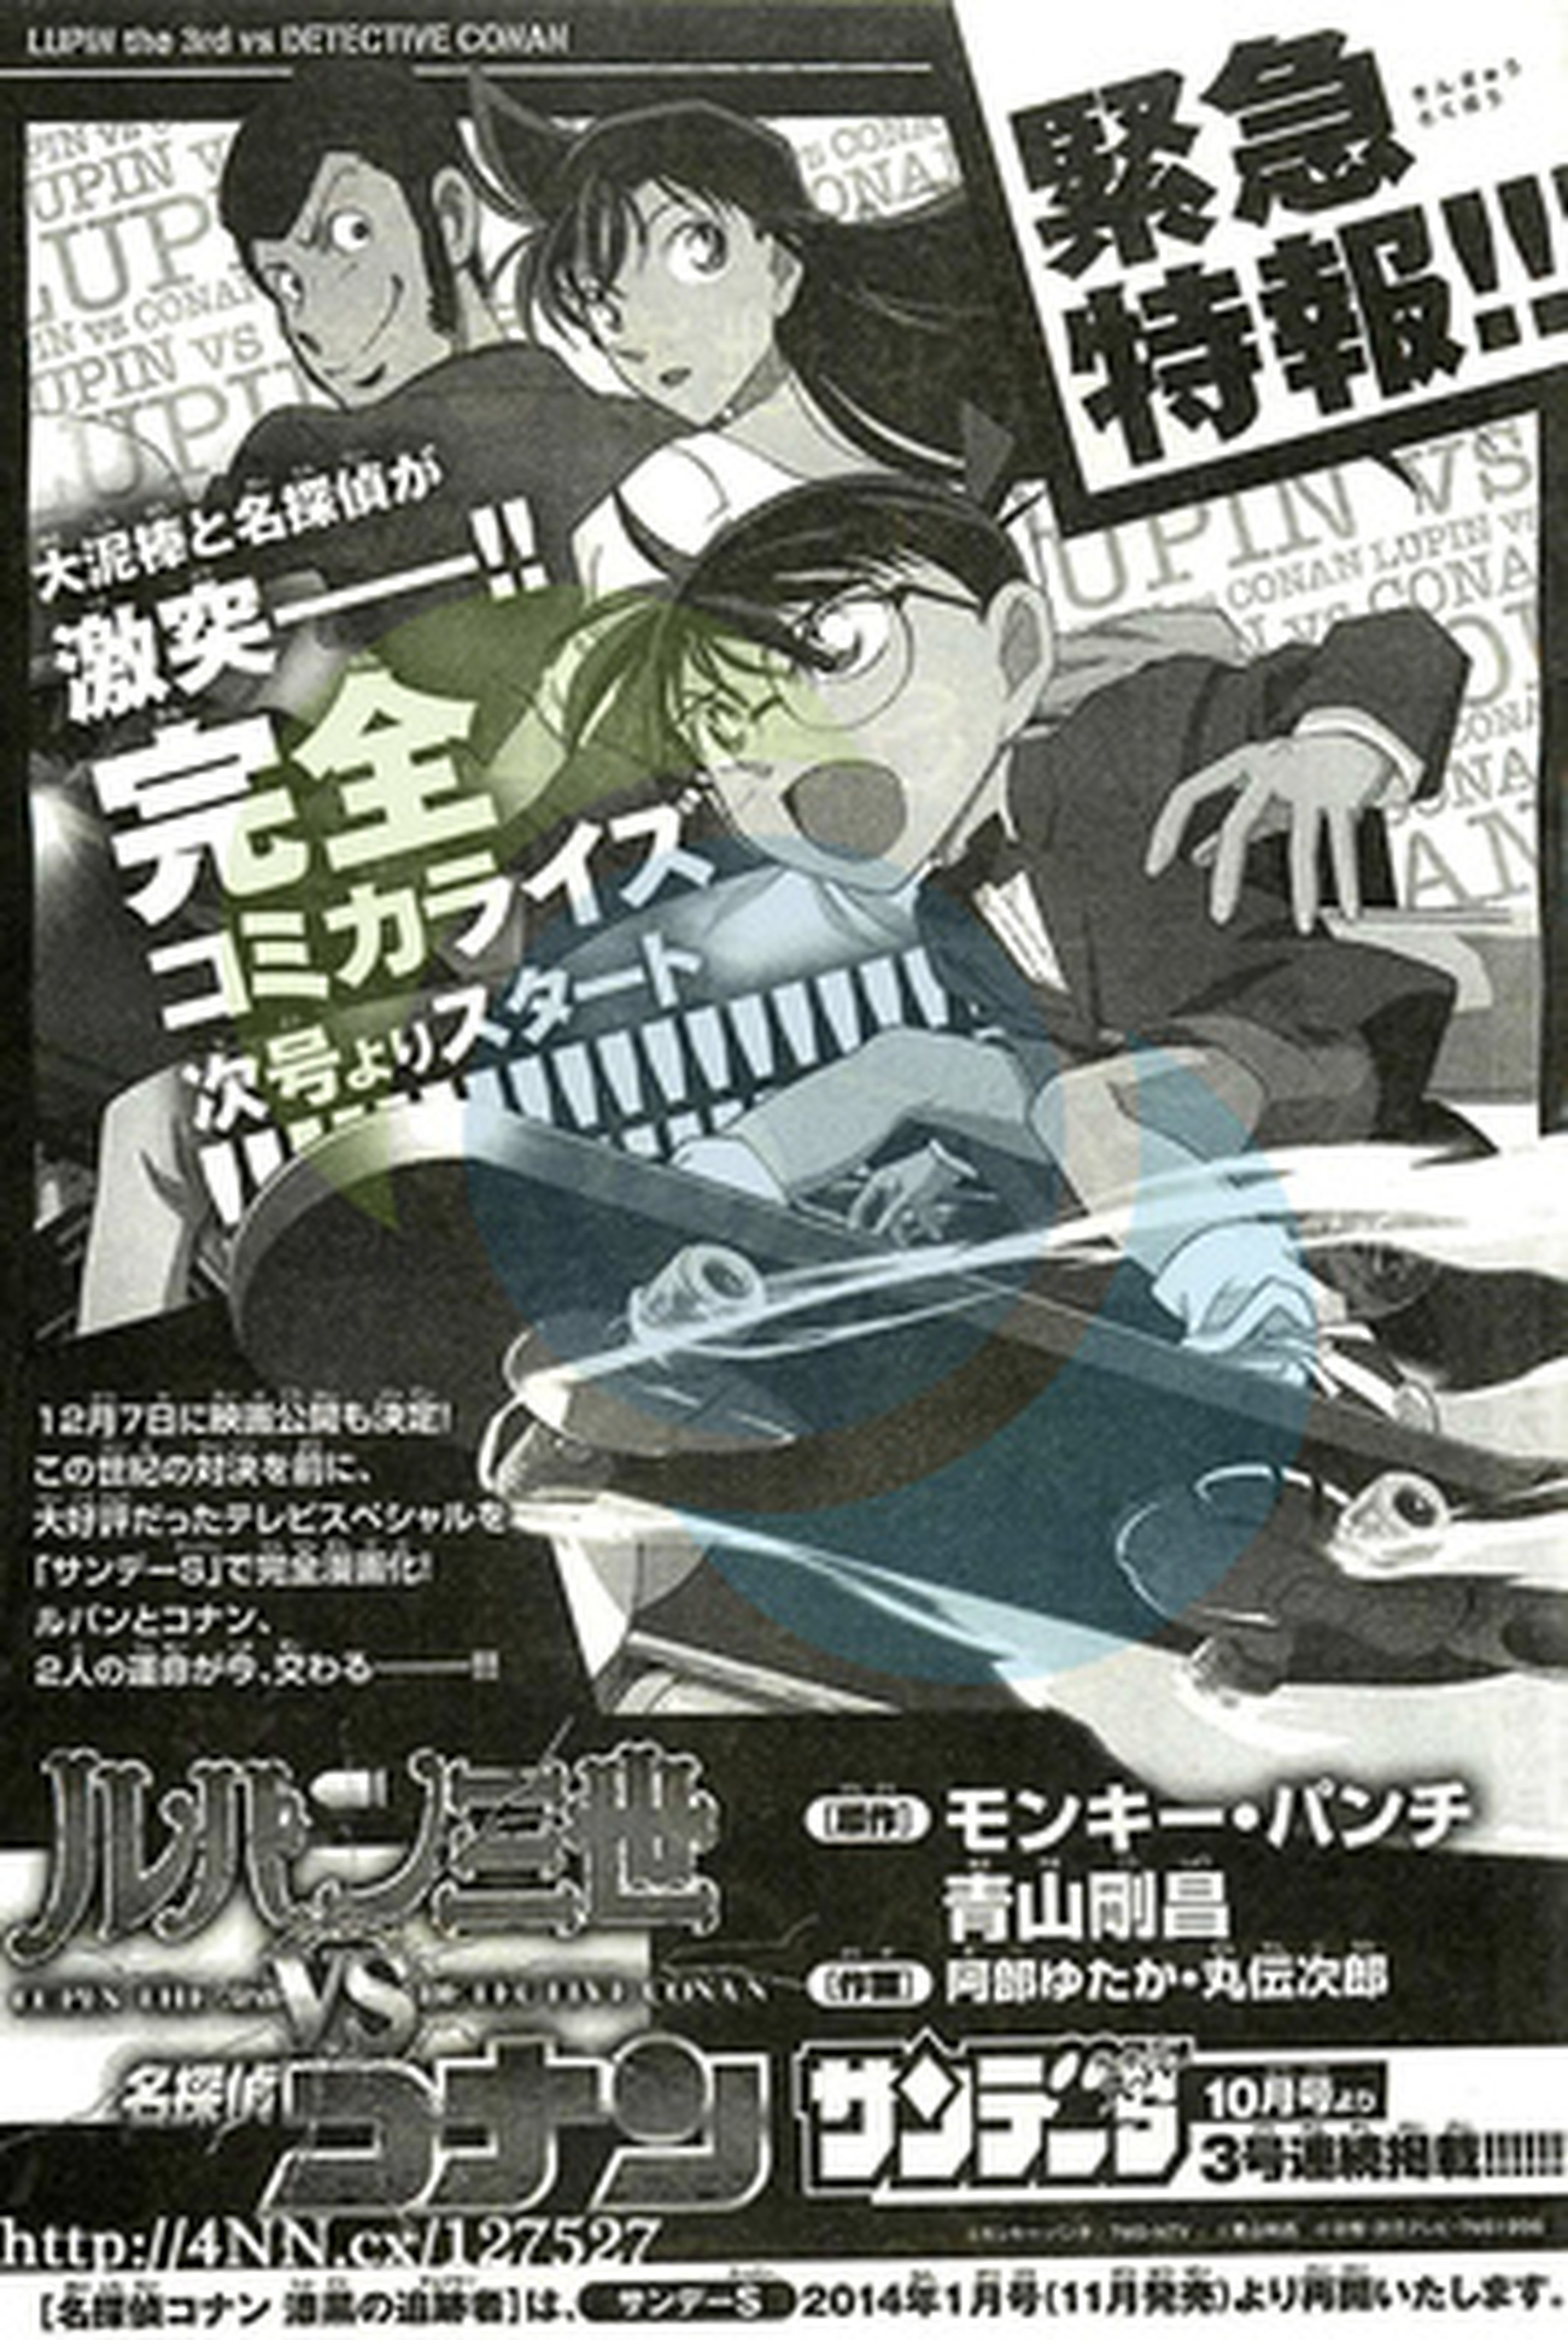 Manga del crossover Lupin III vs. Detective Conan